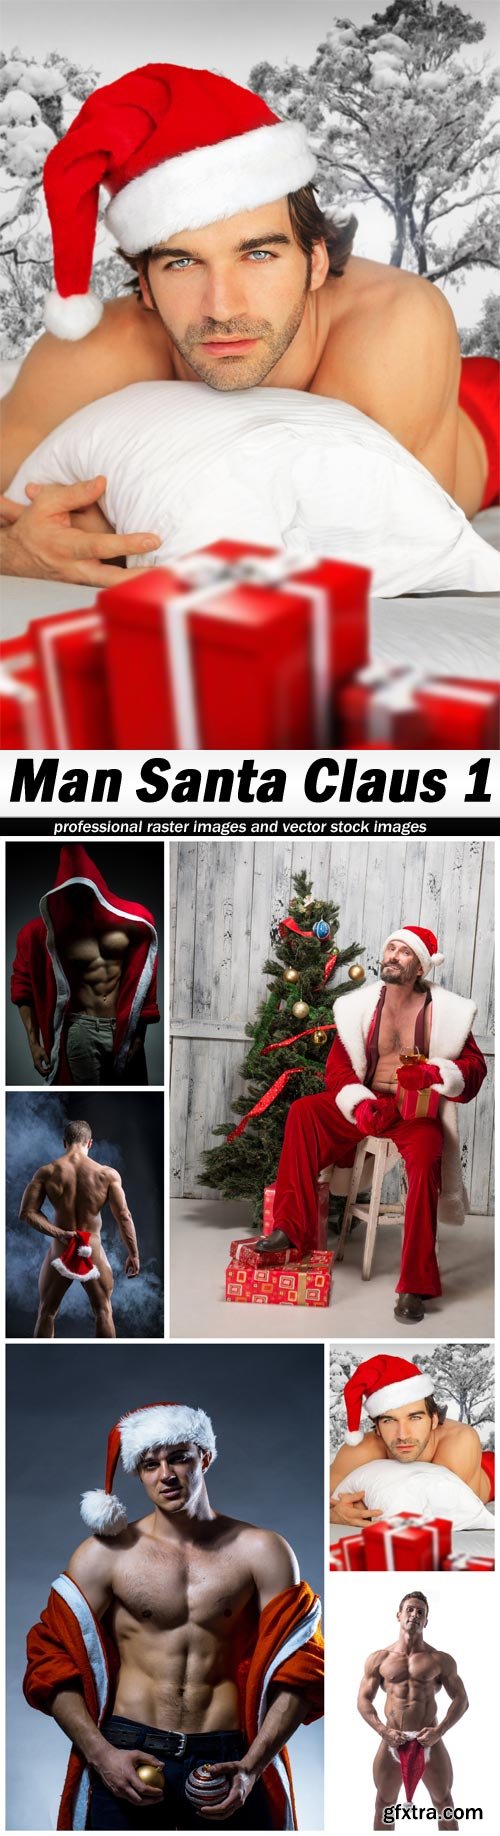 Man Santa Claus 1 - 6 UHQ JPEG